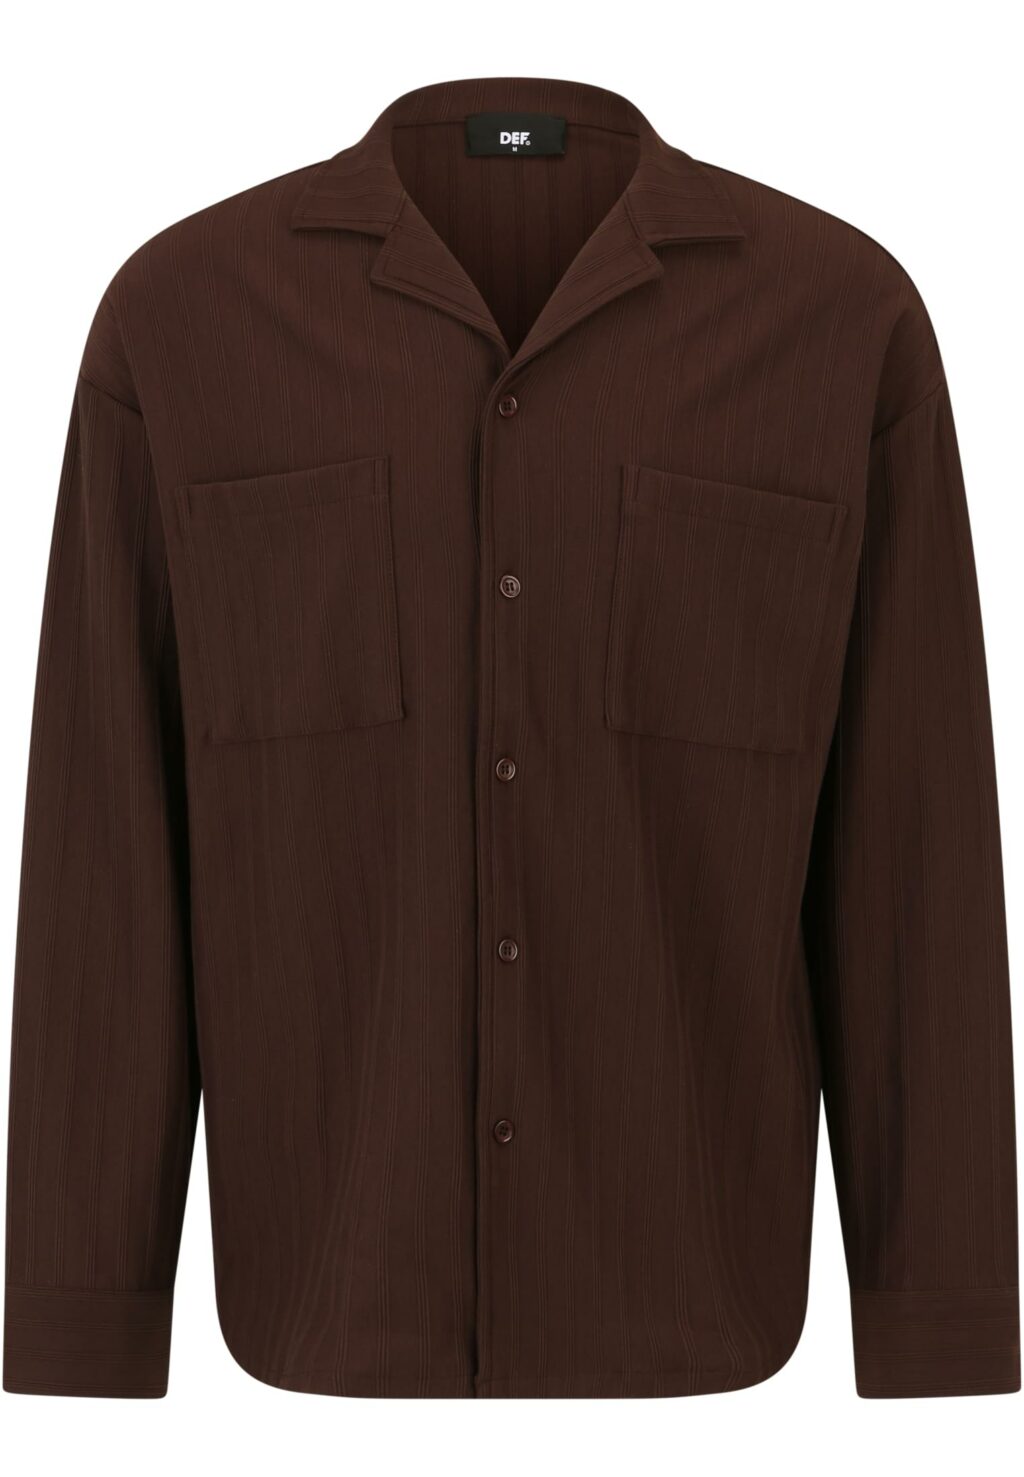 DEF Cali Shirt dark brown DFST011